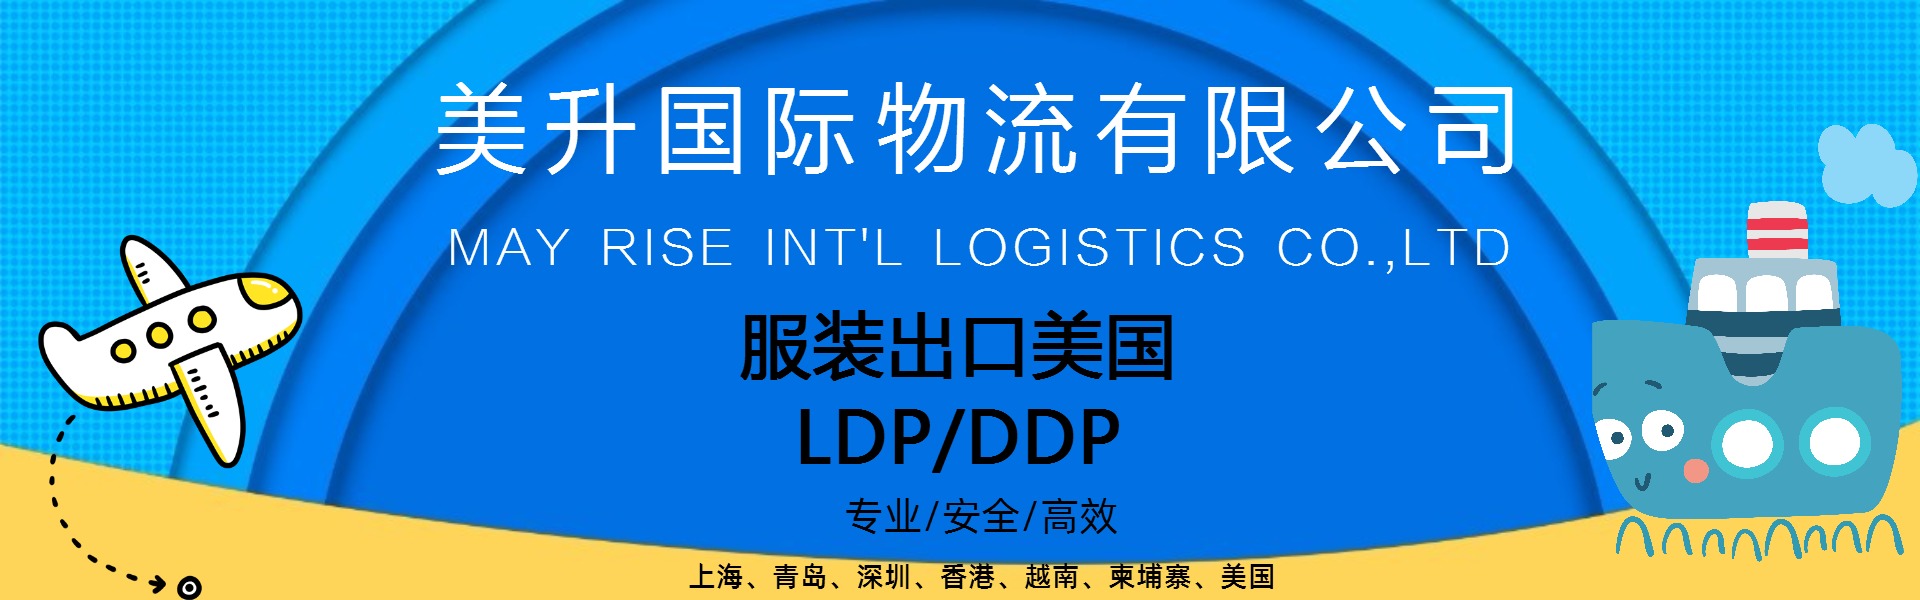 国际物流 服装类出口美国专业美线LDP DDP